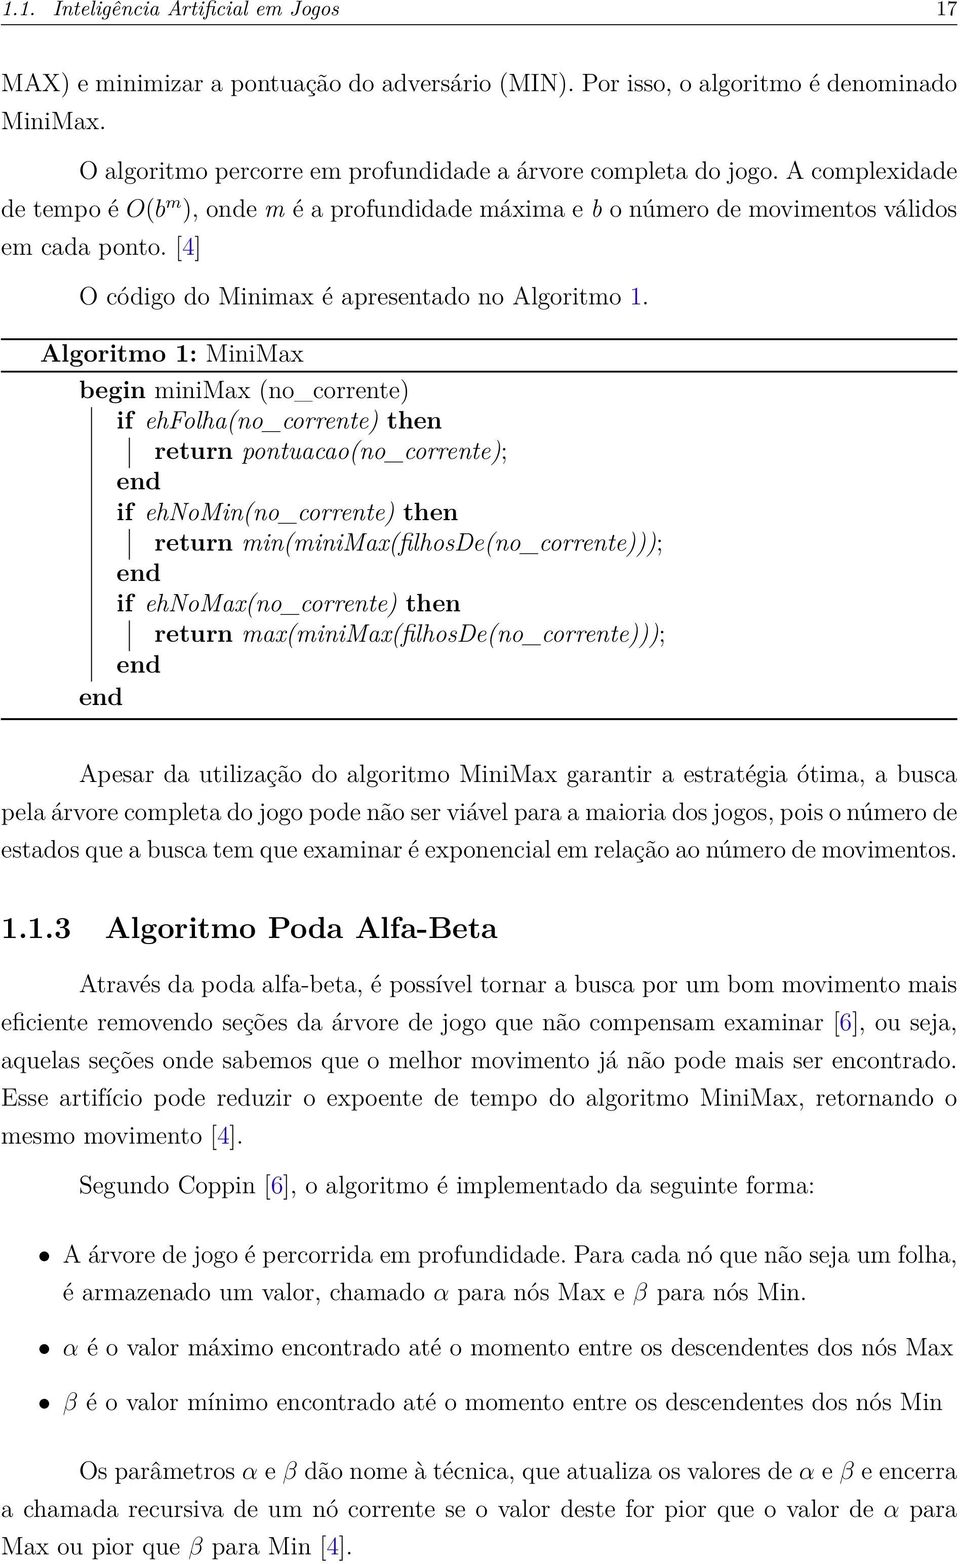 Algoritmo 1: MiniMax begin minimax (no_corrente) if ehfolha(no_corrente) then return pontuacao(no_corrente); end if ehnomin(no_corrente) then return min(minimax(filhosde(no_corrente))); end if